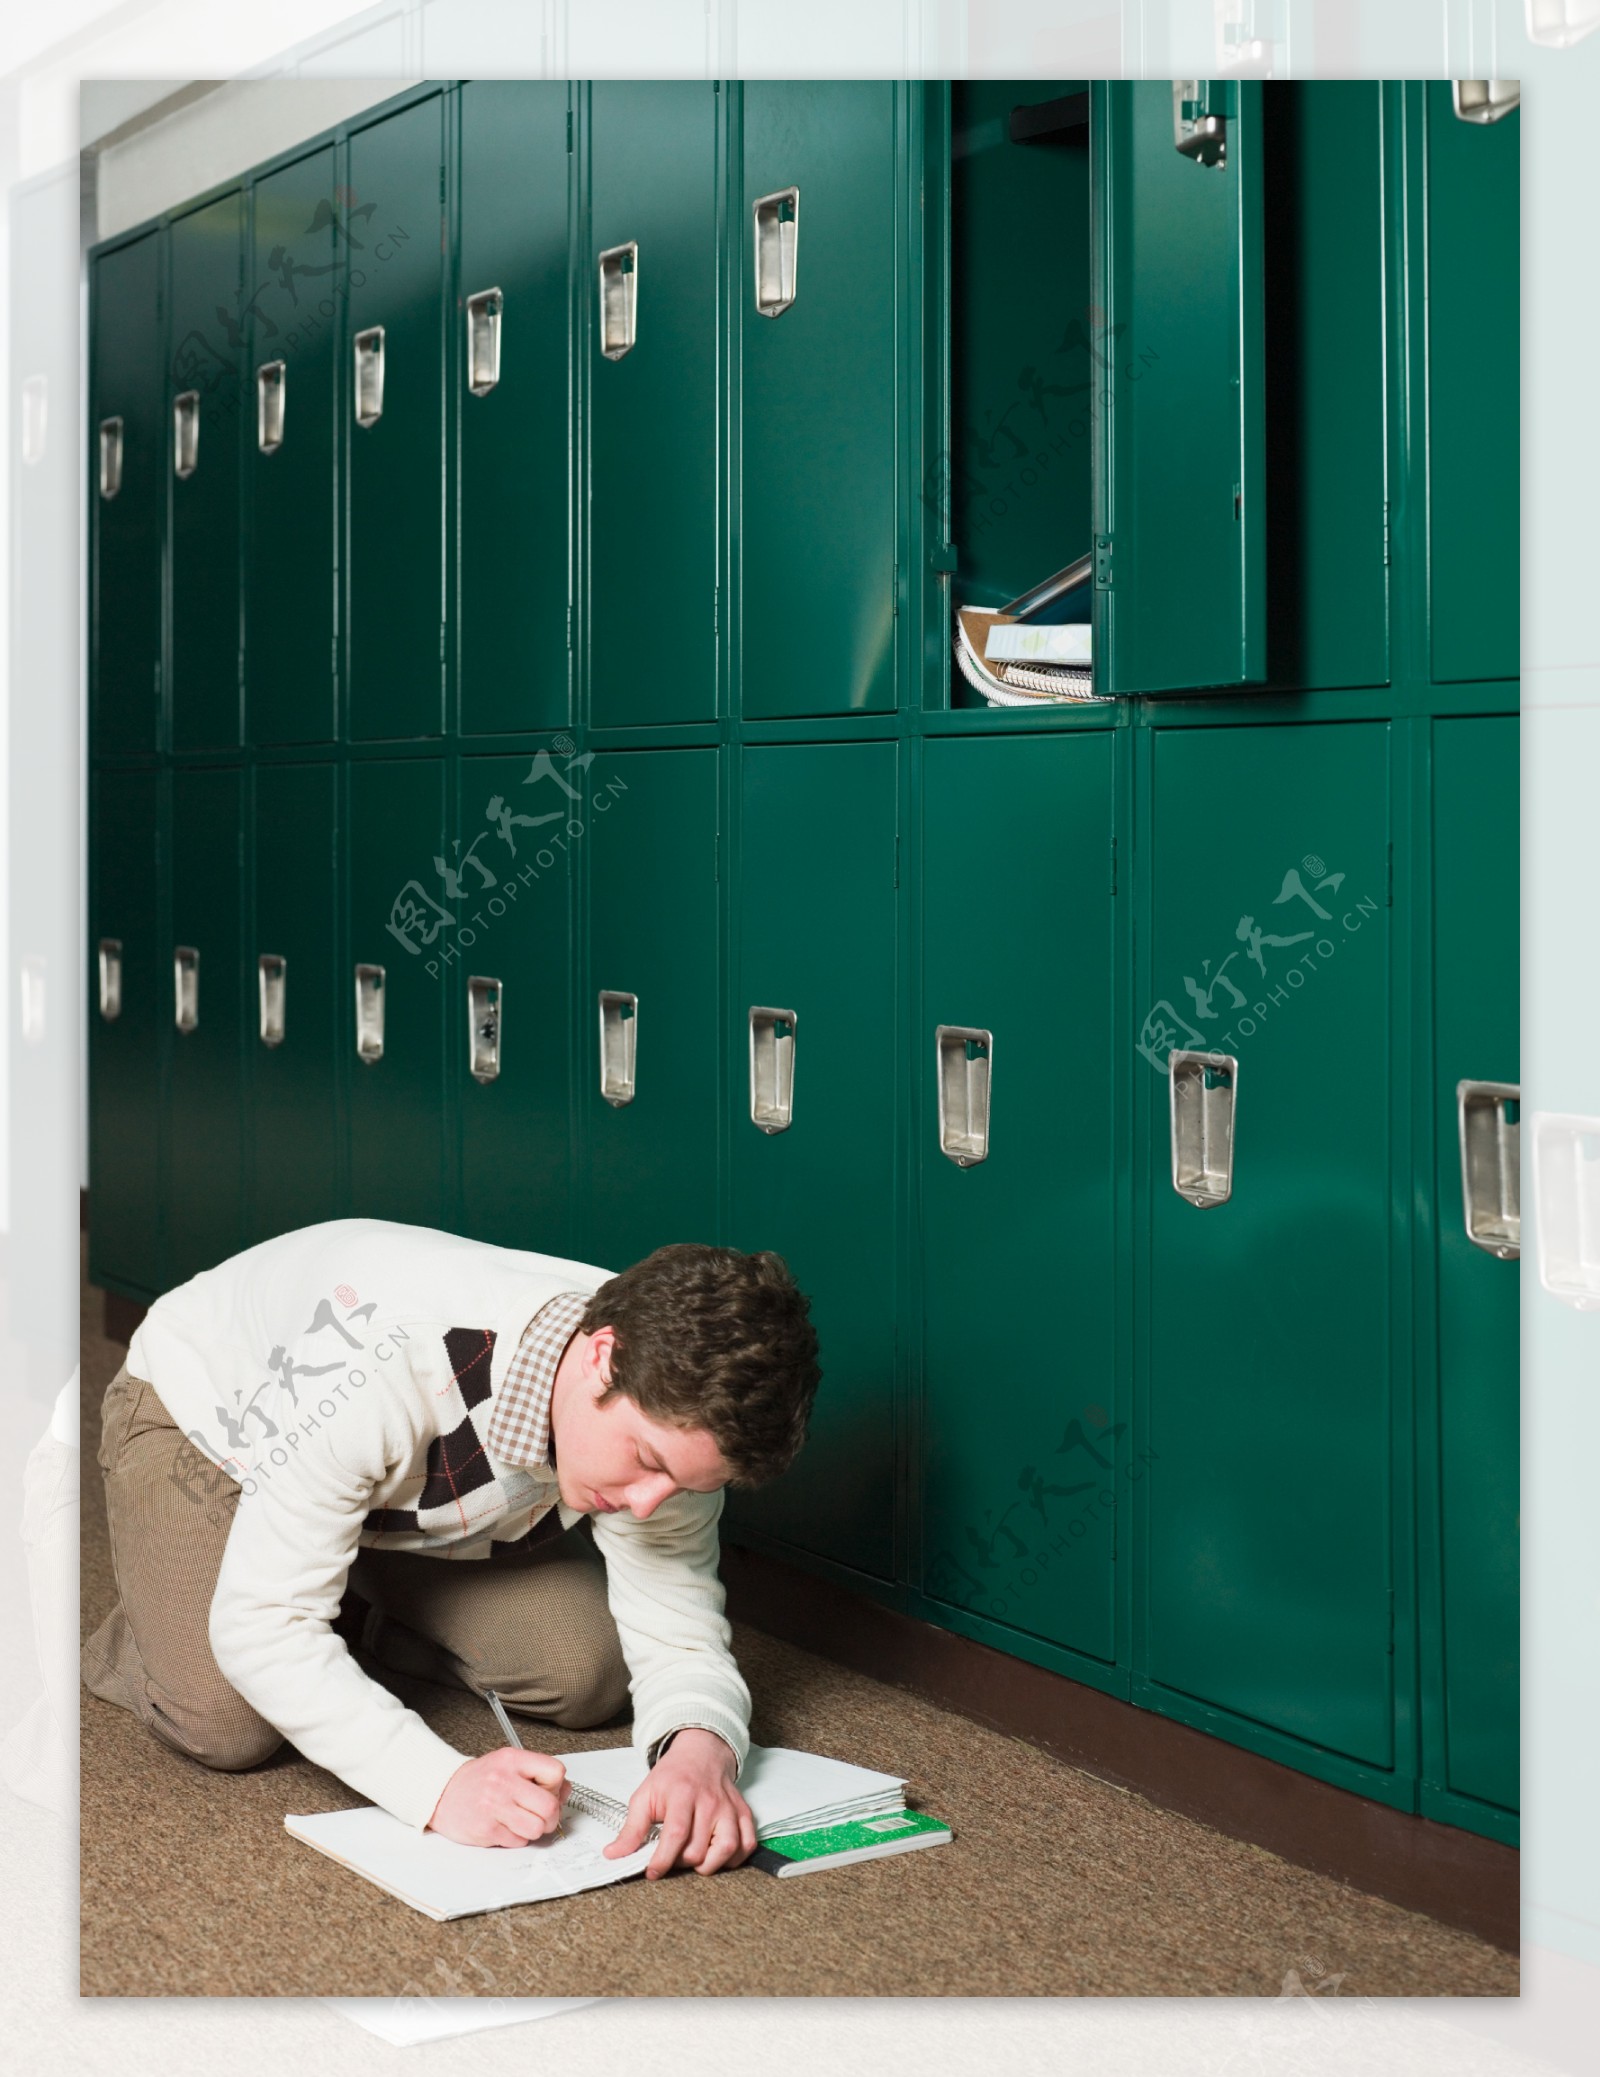 绿色储物柜旁跪在地上写字的男孩图片图片